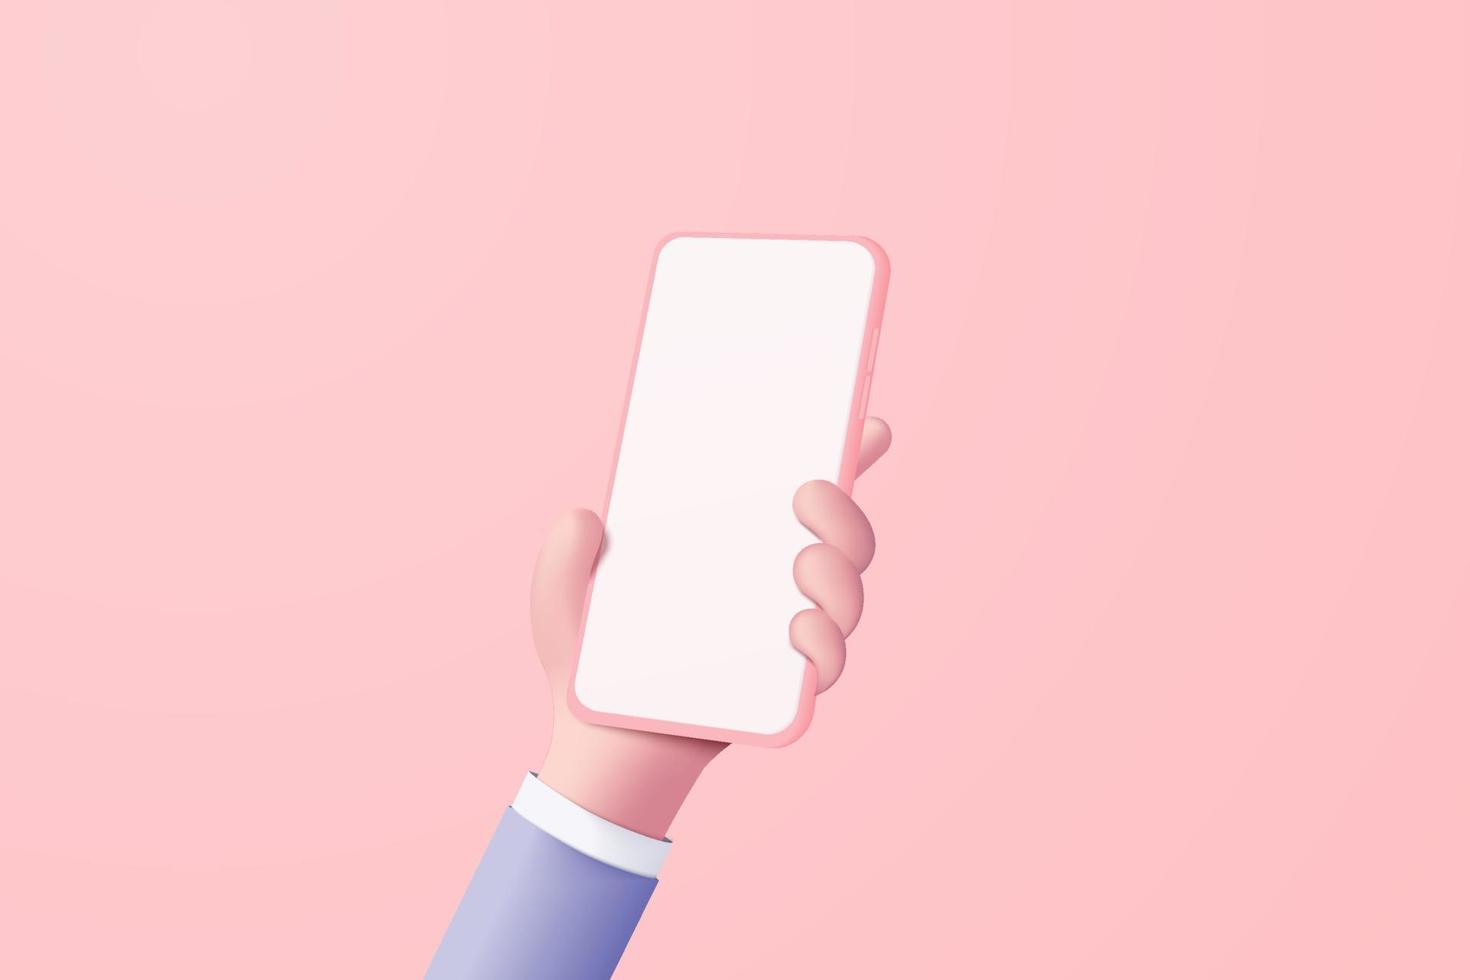 main de vecteur 3d tenant un téléphone portable isolé sur fond rose pastel, main utilisant un smartphone avec écran vide pour le concept mobile de maquette. vitrine affichage 3d scène minimale avec appareil smartphone